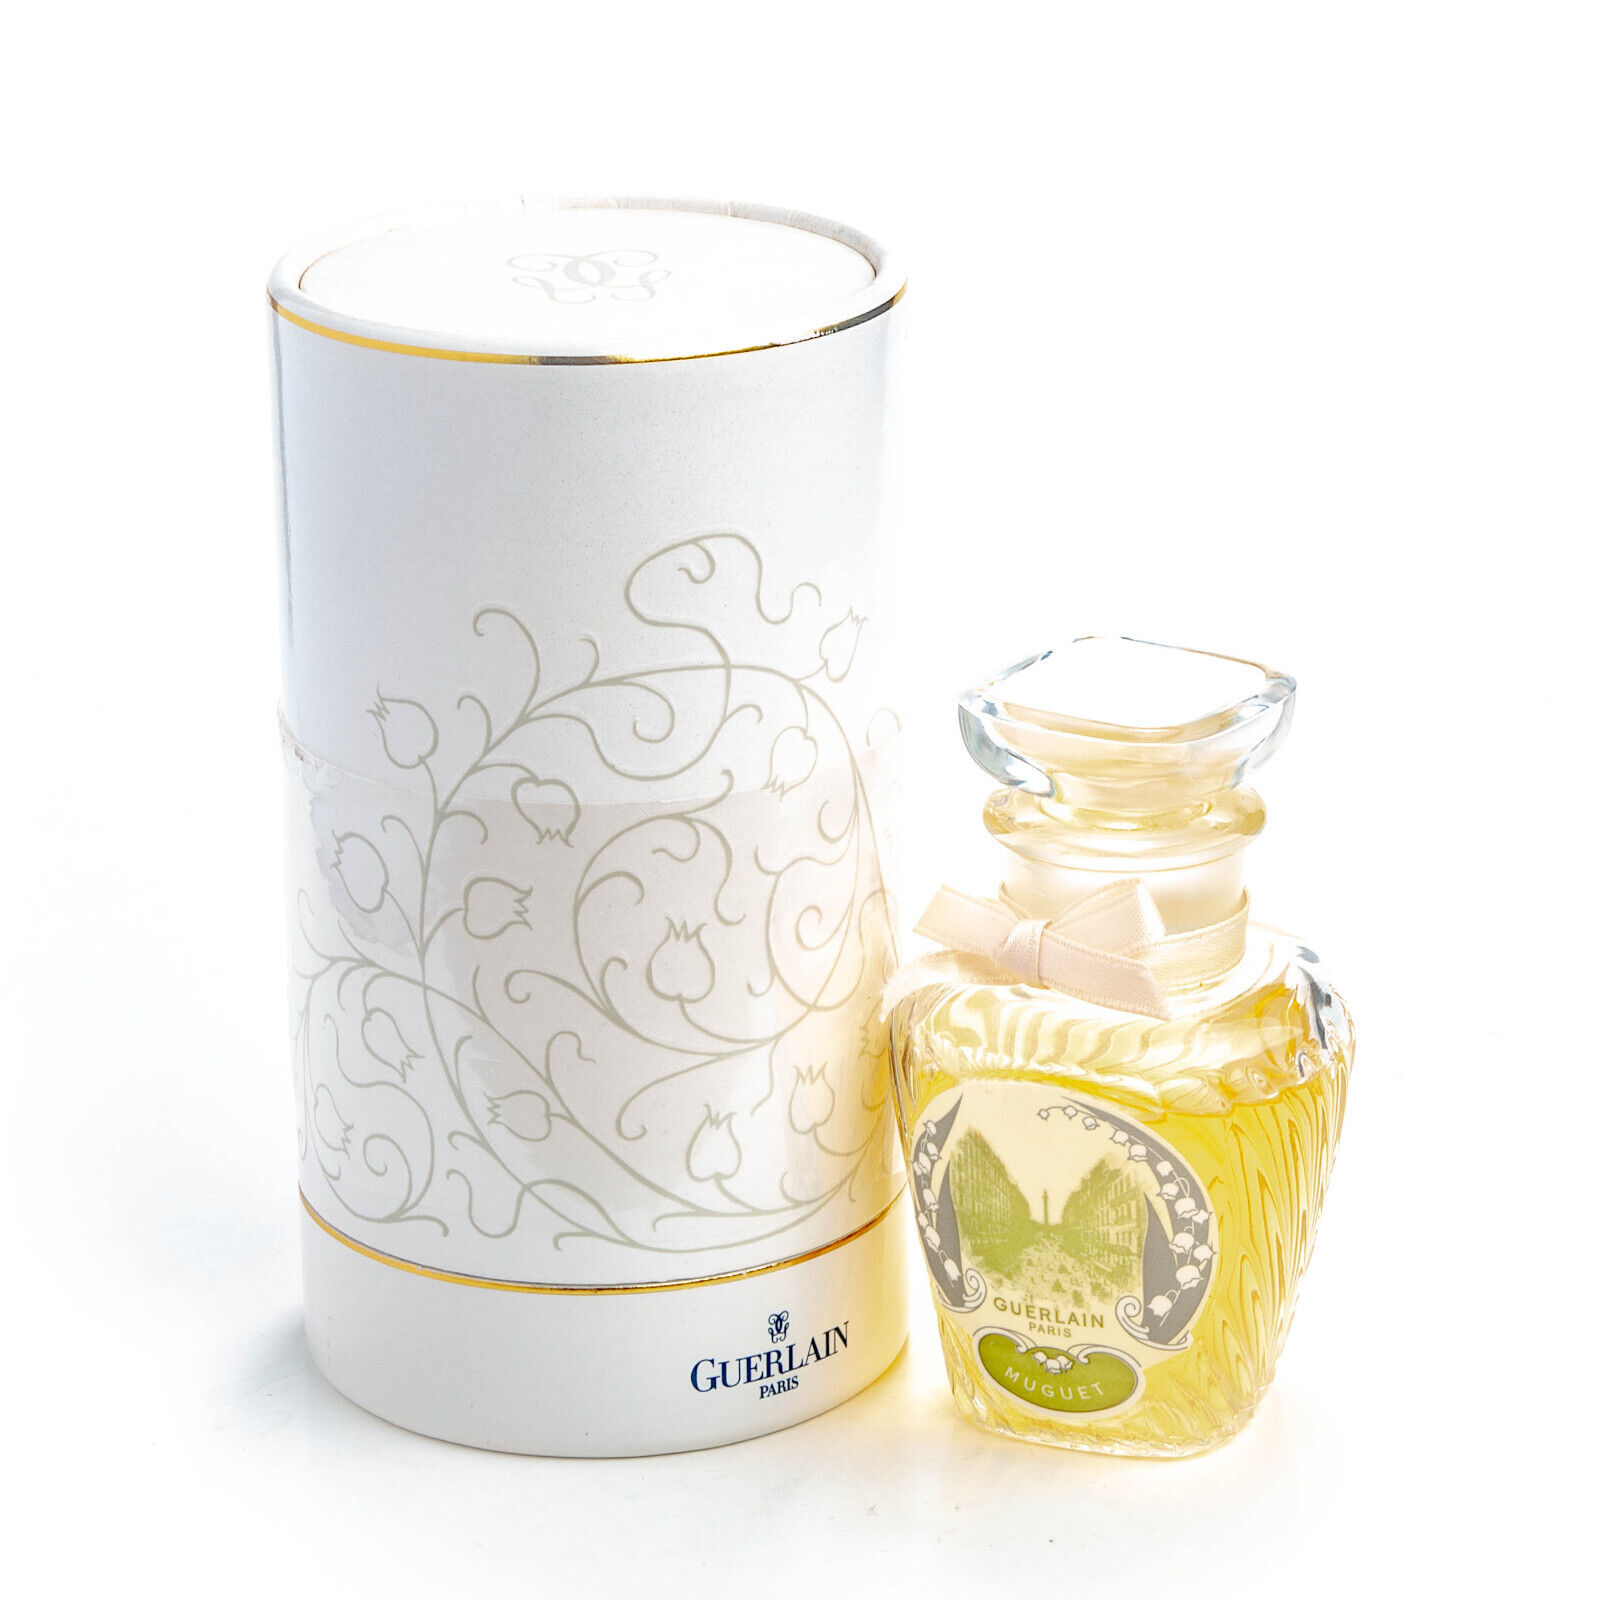 Guerlain Muguet Eau de Toilette 2.5OZ 75ml EdT Womens Perfume Limited Edition